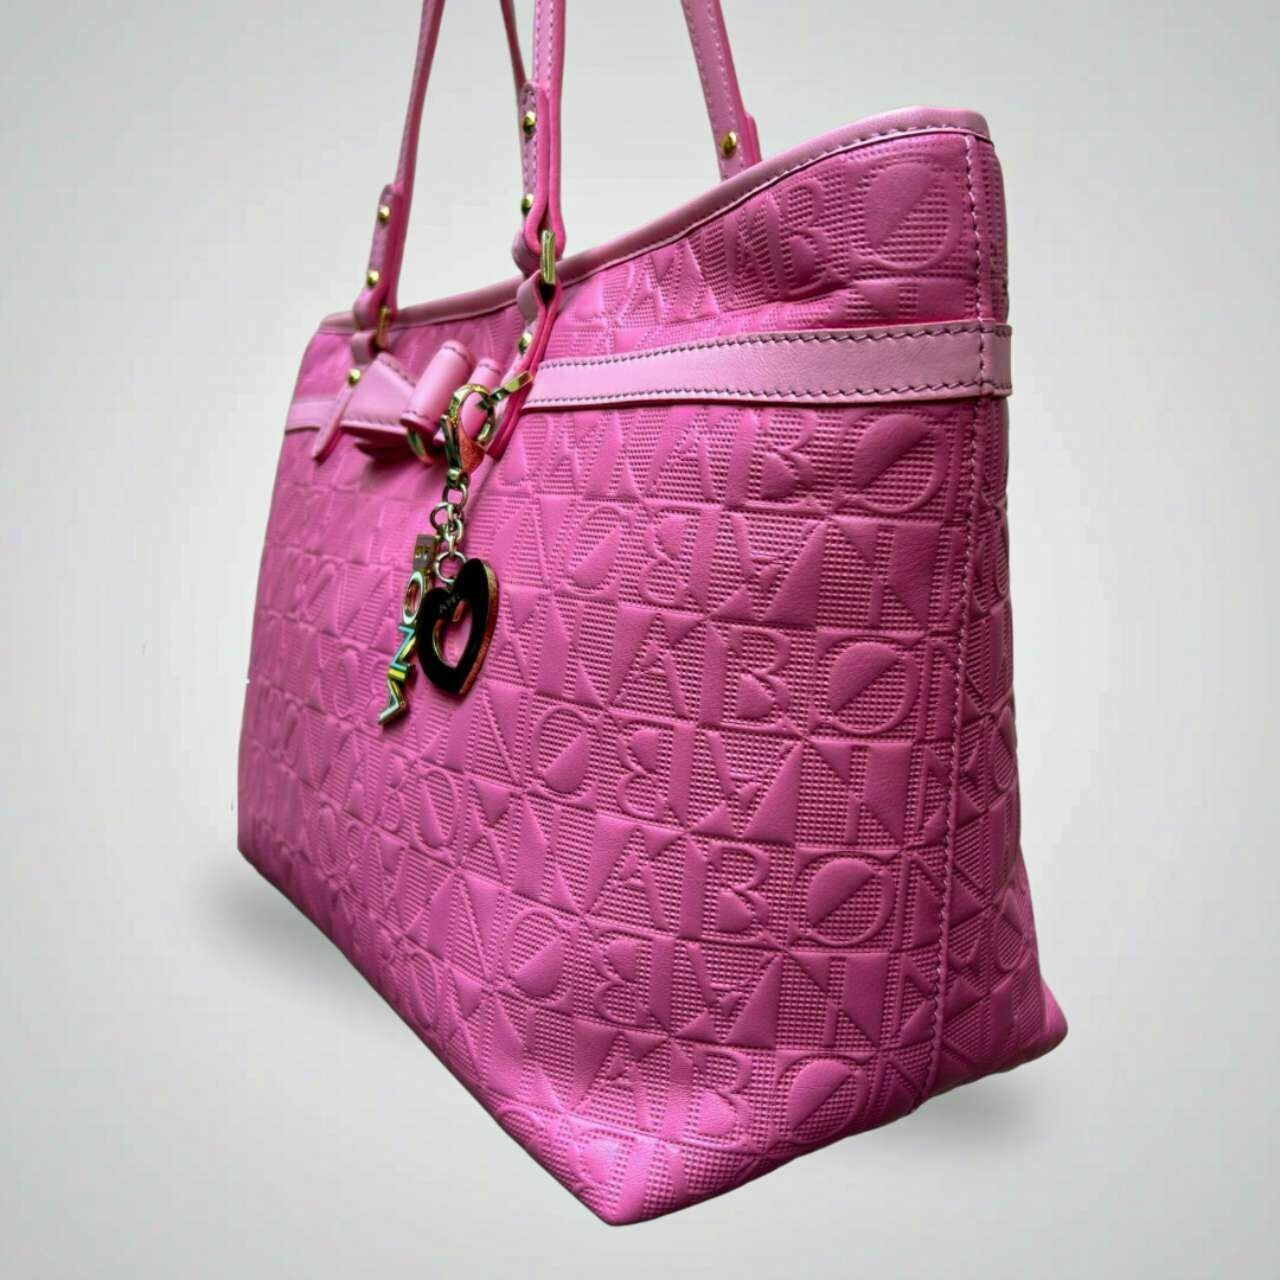 Bonia Pink Rose Tote Bag - 801035-202-24-3